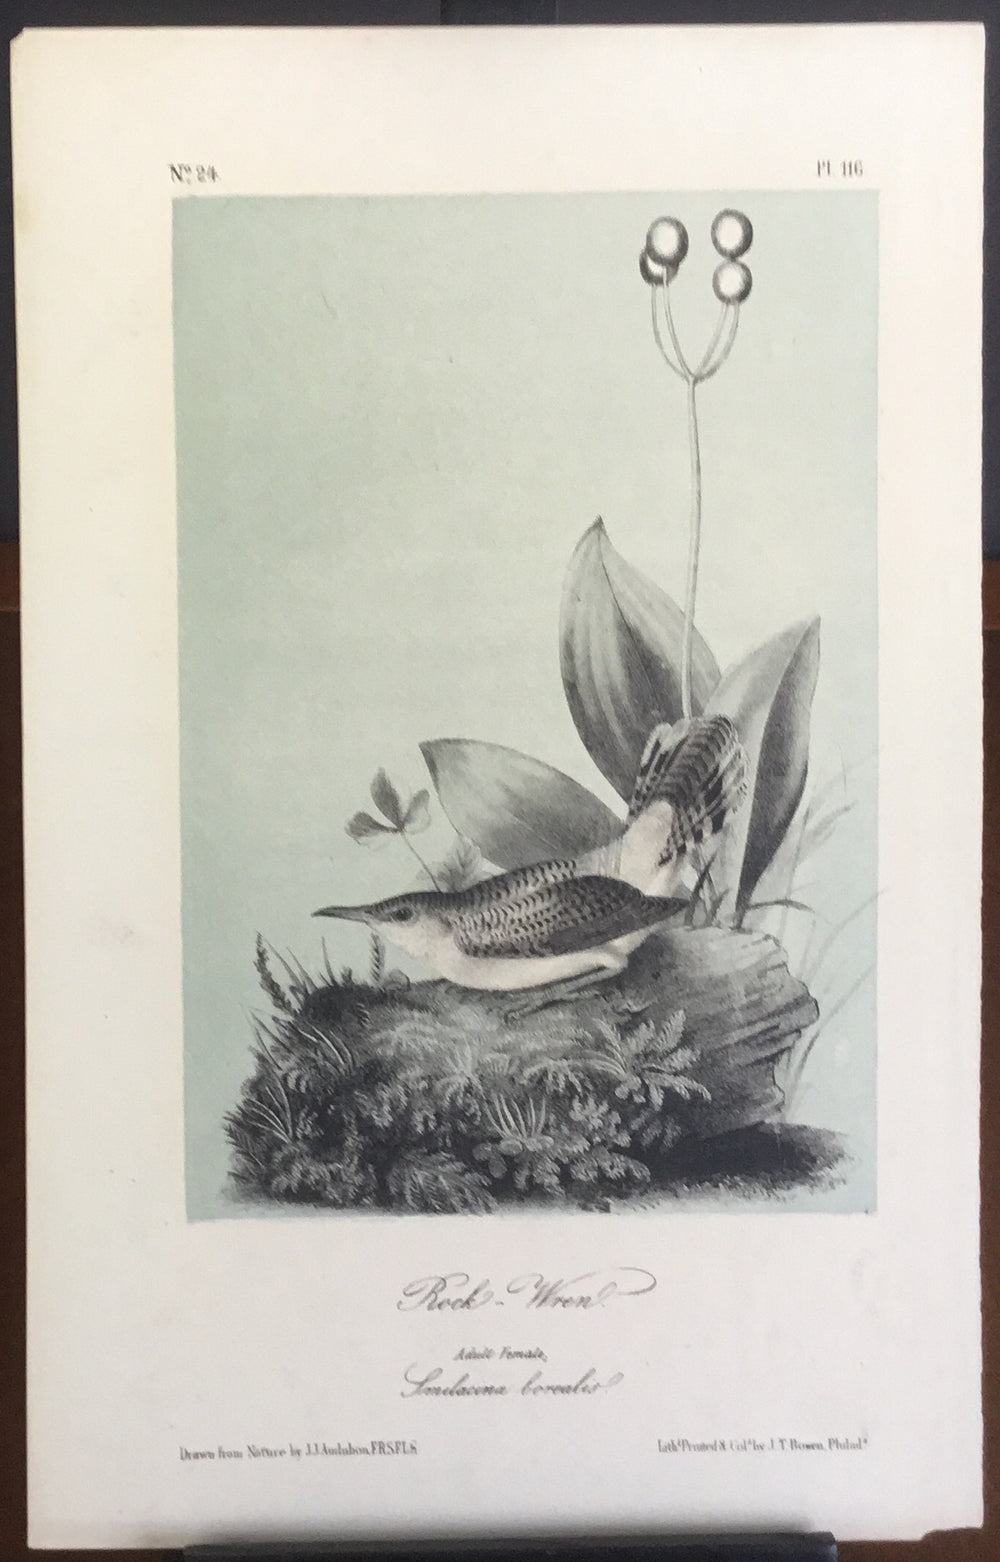 Audubon Octavo Rock Wren, plate 116, uncolored test sheet, 7 x 11